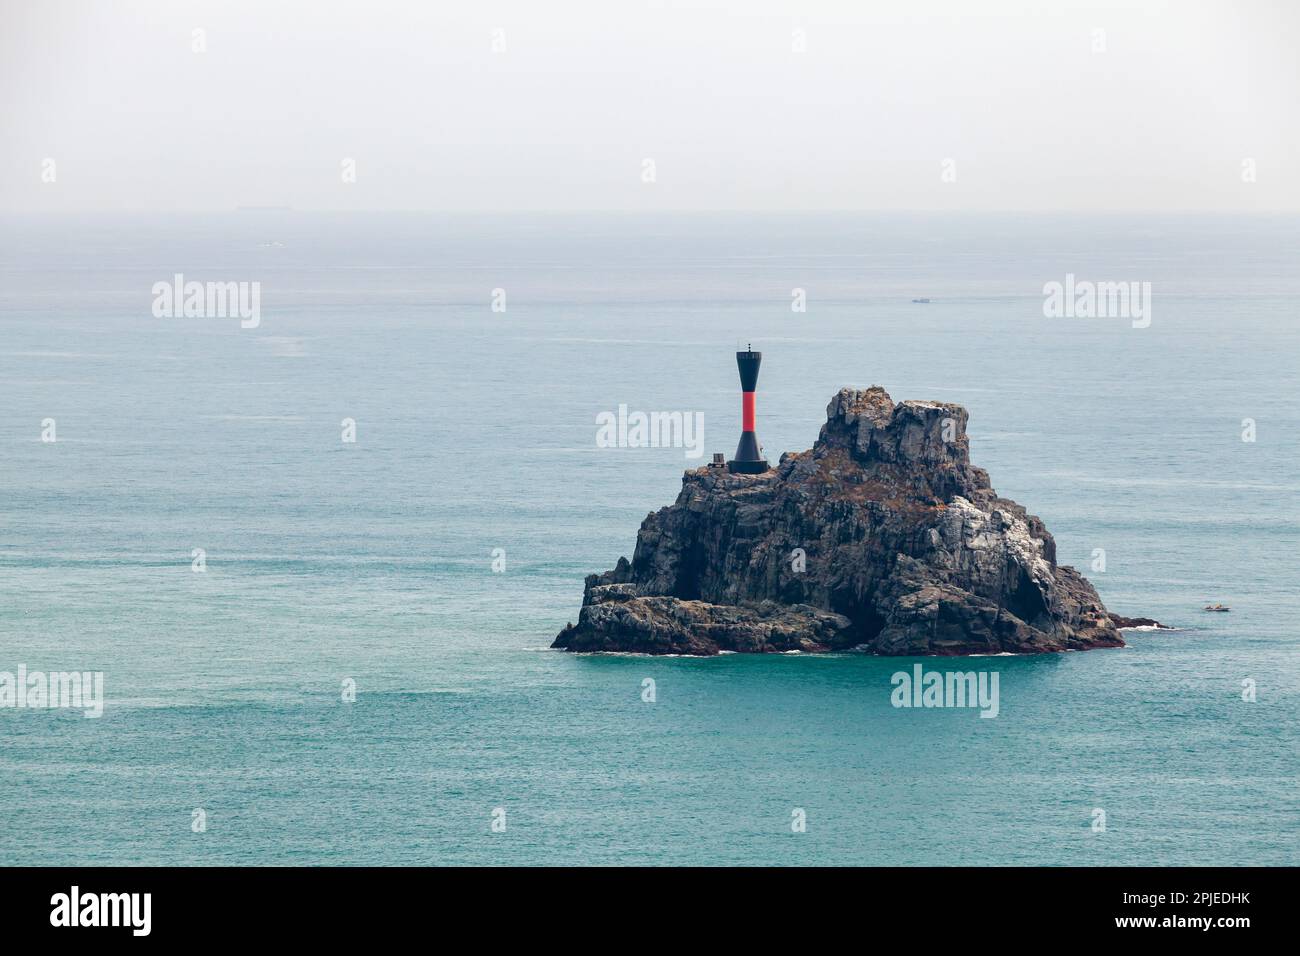 Markierung Für Isolierte Gefahr. Der schwarze Leuchtturm mit rotem Streifen befindet sich auf einer kleinen felsigen Insel im Meer von Japan in der Nähe von Busan, Südkorea Stockfoto